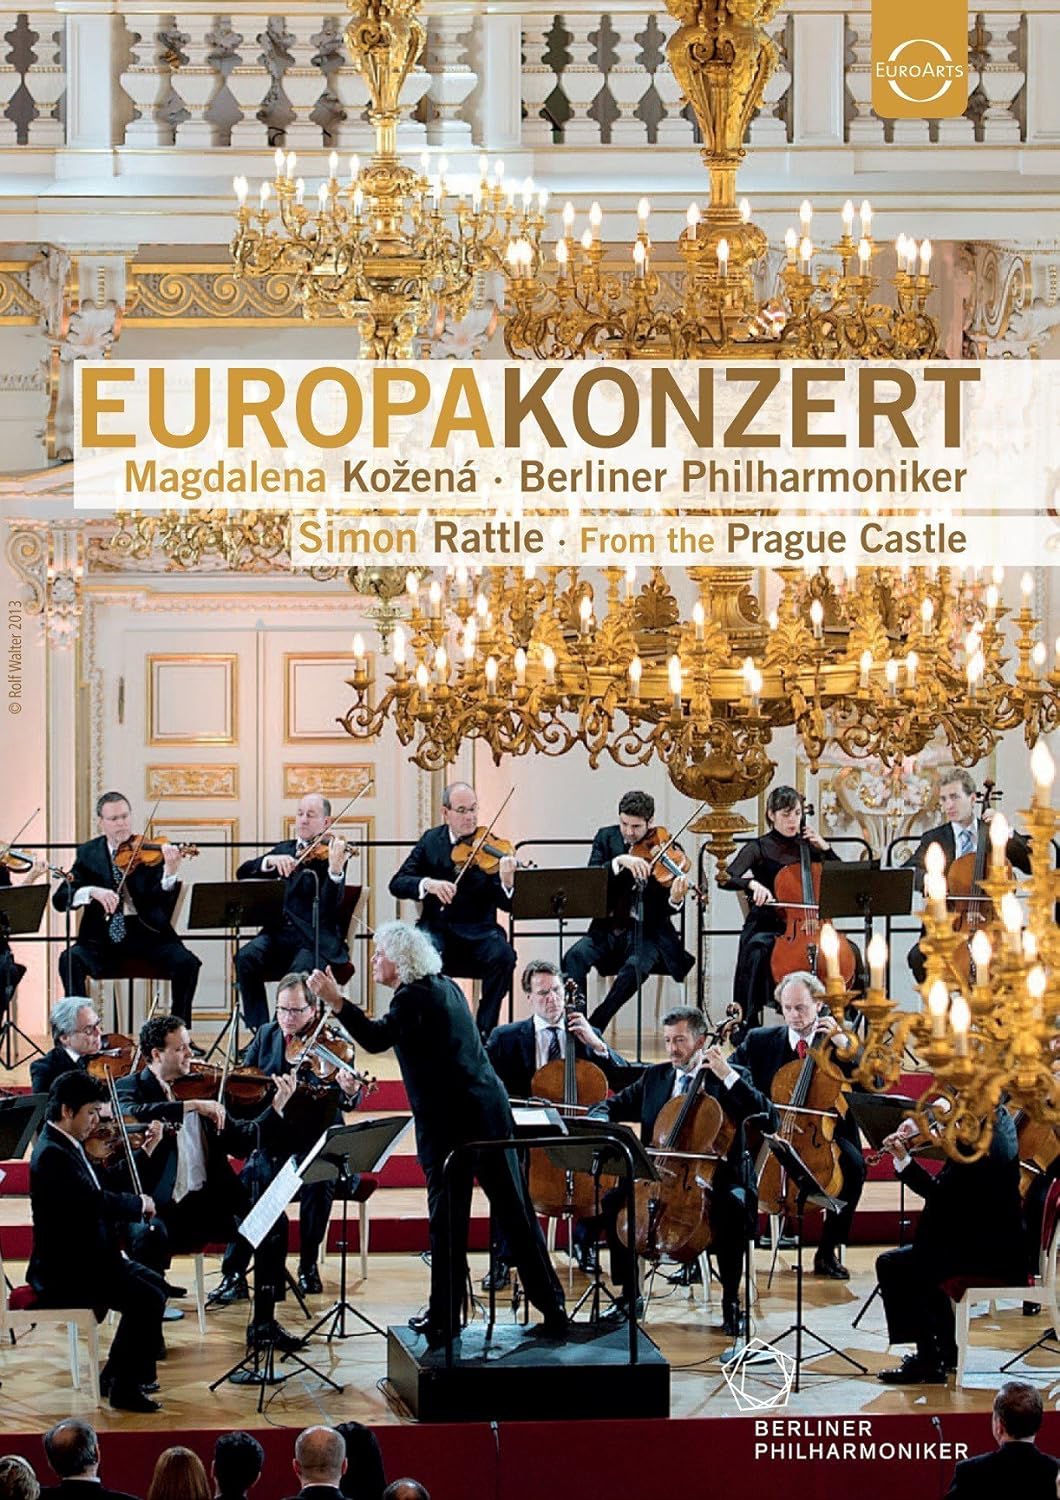 Europakonzert 2013 from Prague (DVD) | Magdalena Kozena, Berliner Philharmoniker, Simon Rattle